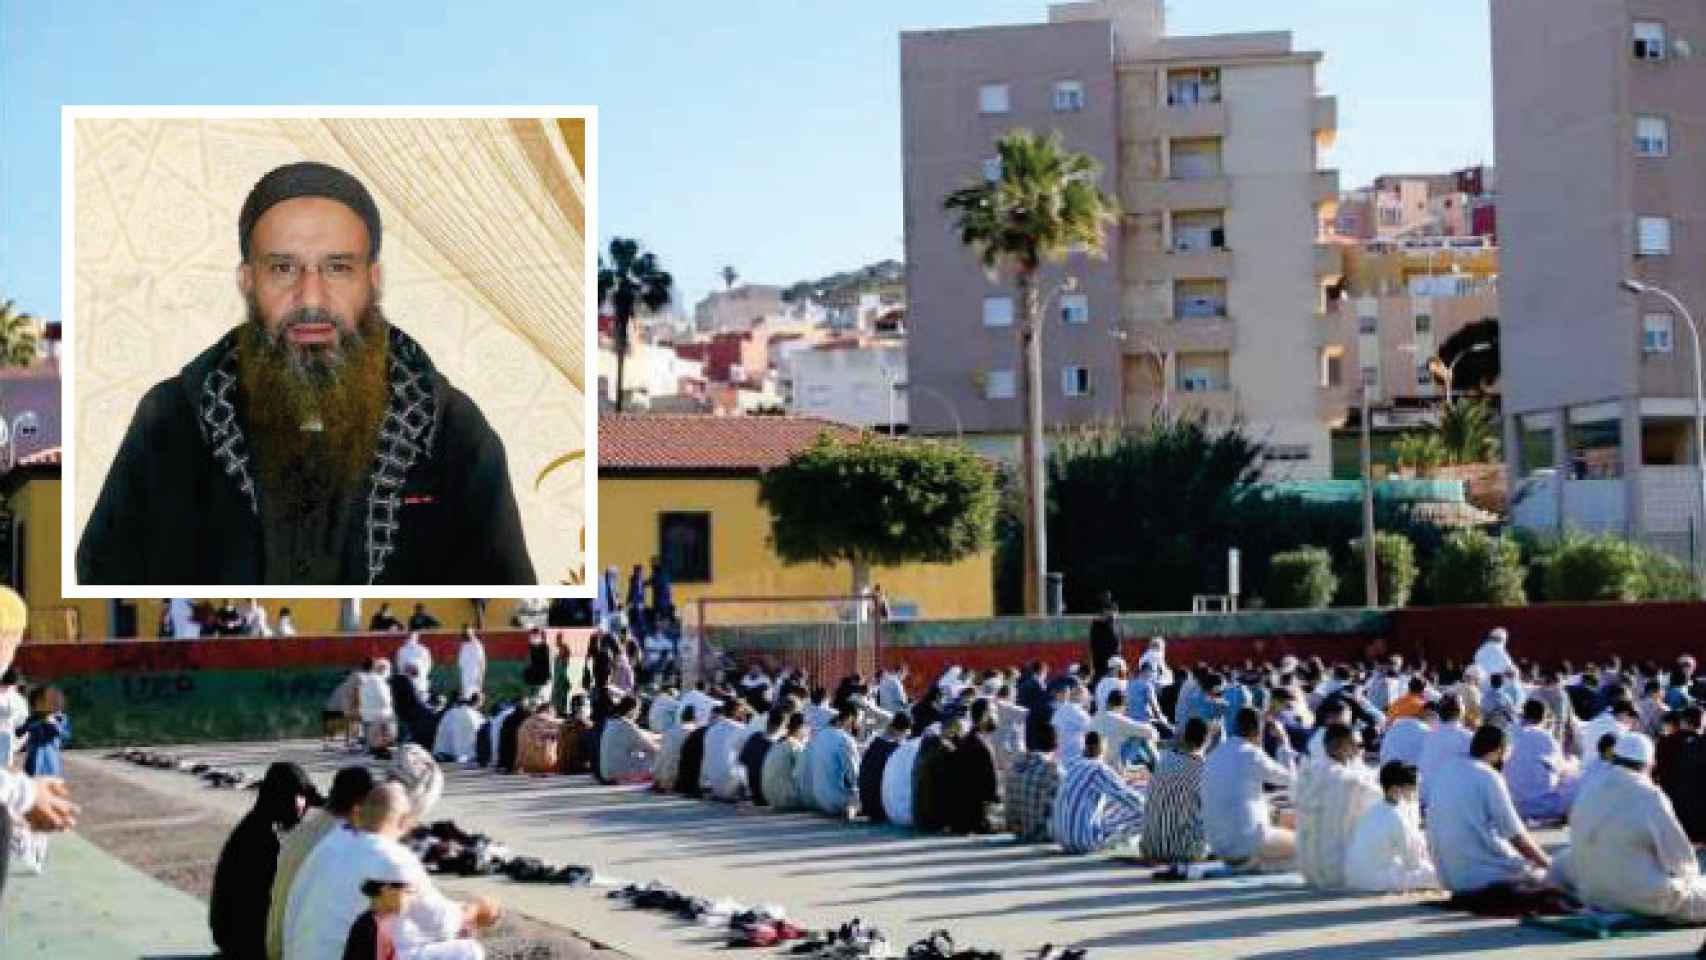 Imágenes del imán de Melilla detenido y de uno de los rezos que lideró en la Mezquita Blanca, incluidas en un informe de la Policía.